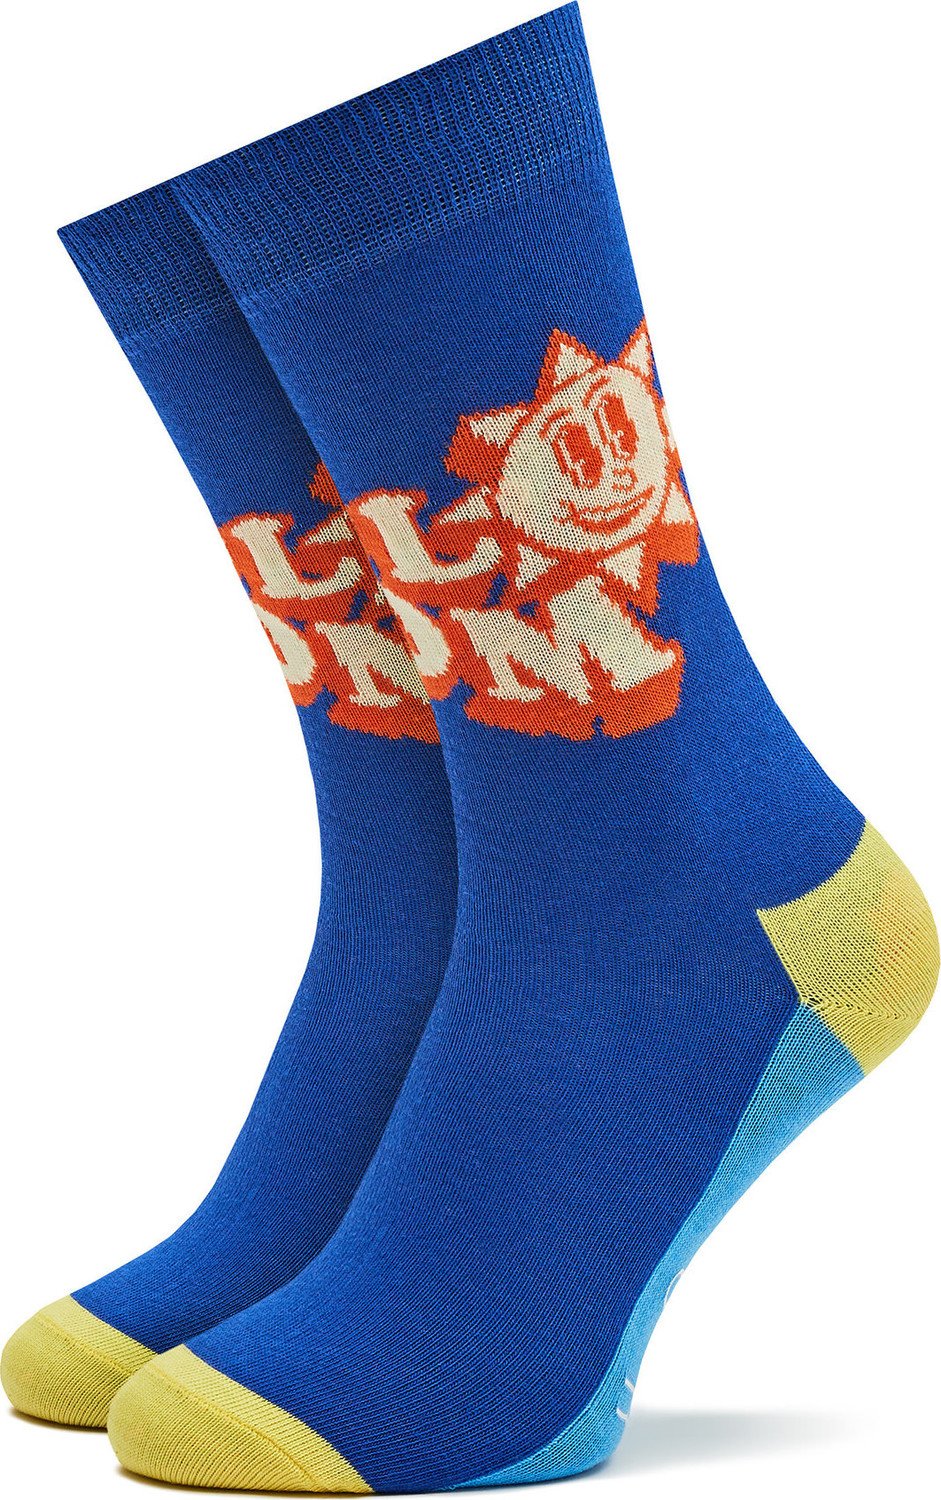 Dámské klasické ponožky Happy Socks P000500 Tmavomodrá